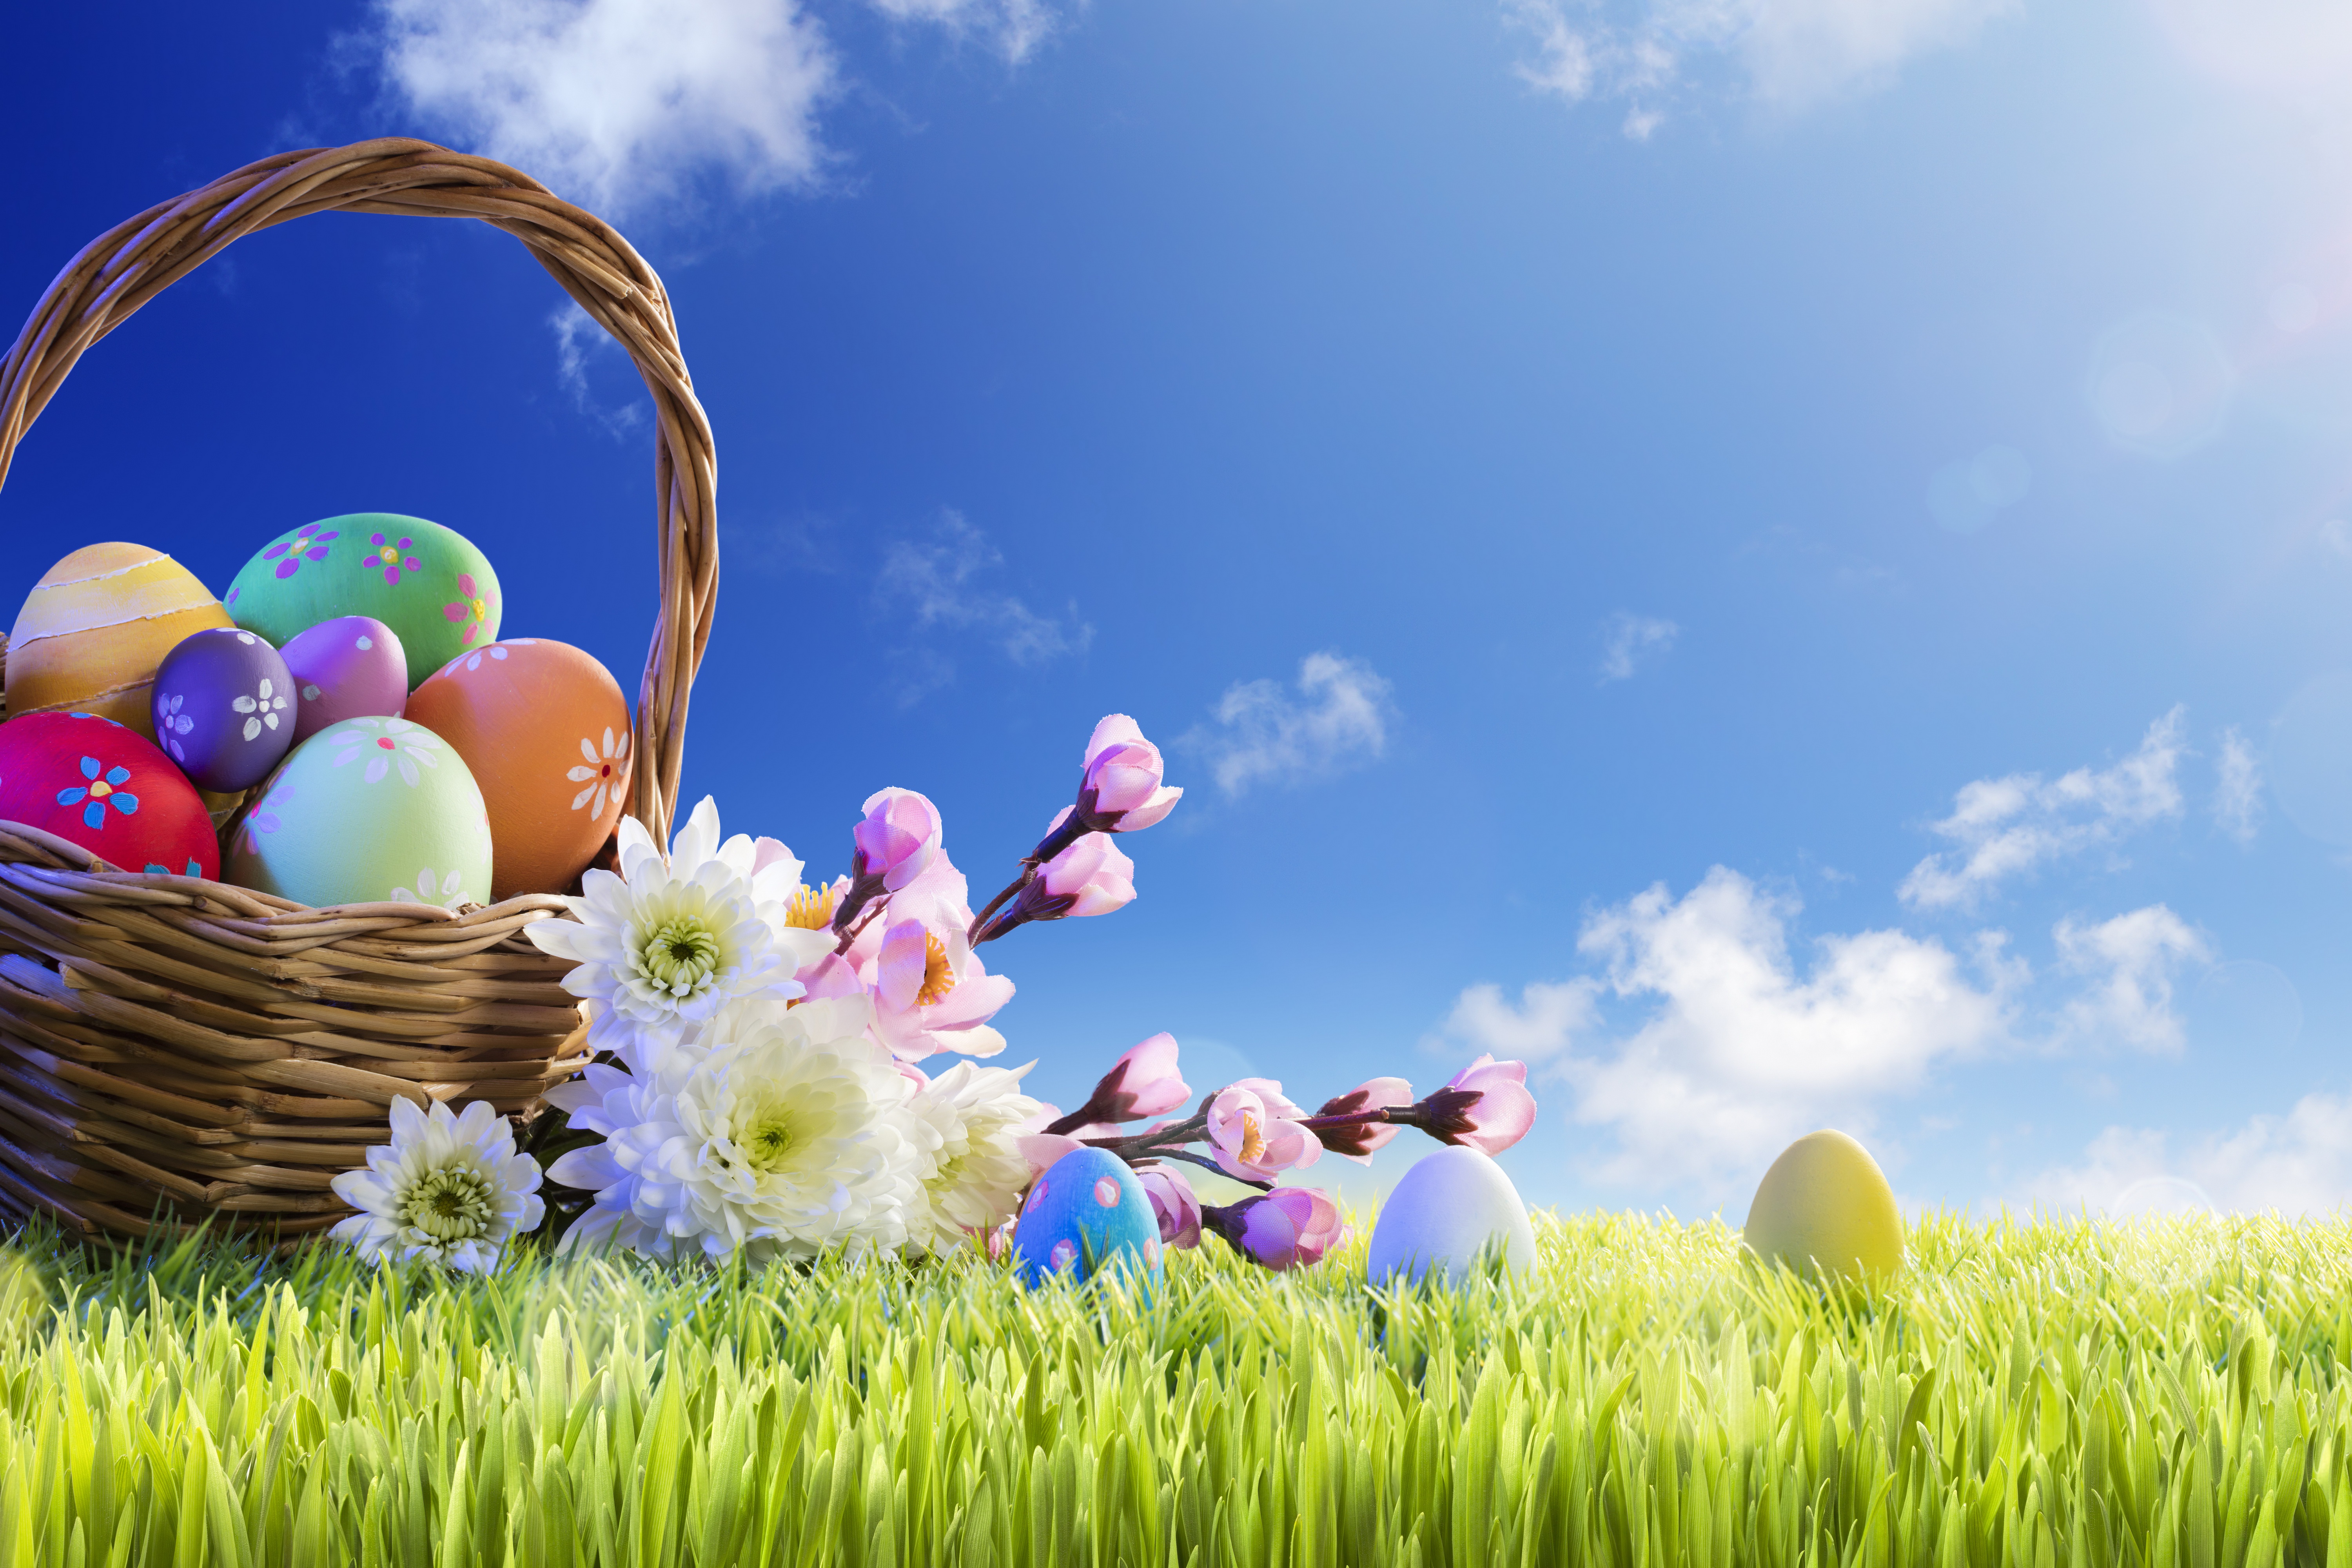 Basket Easter Egg Flower Grass 6000x4000